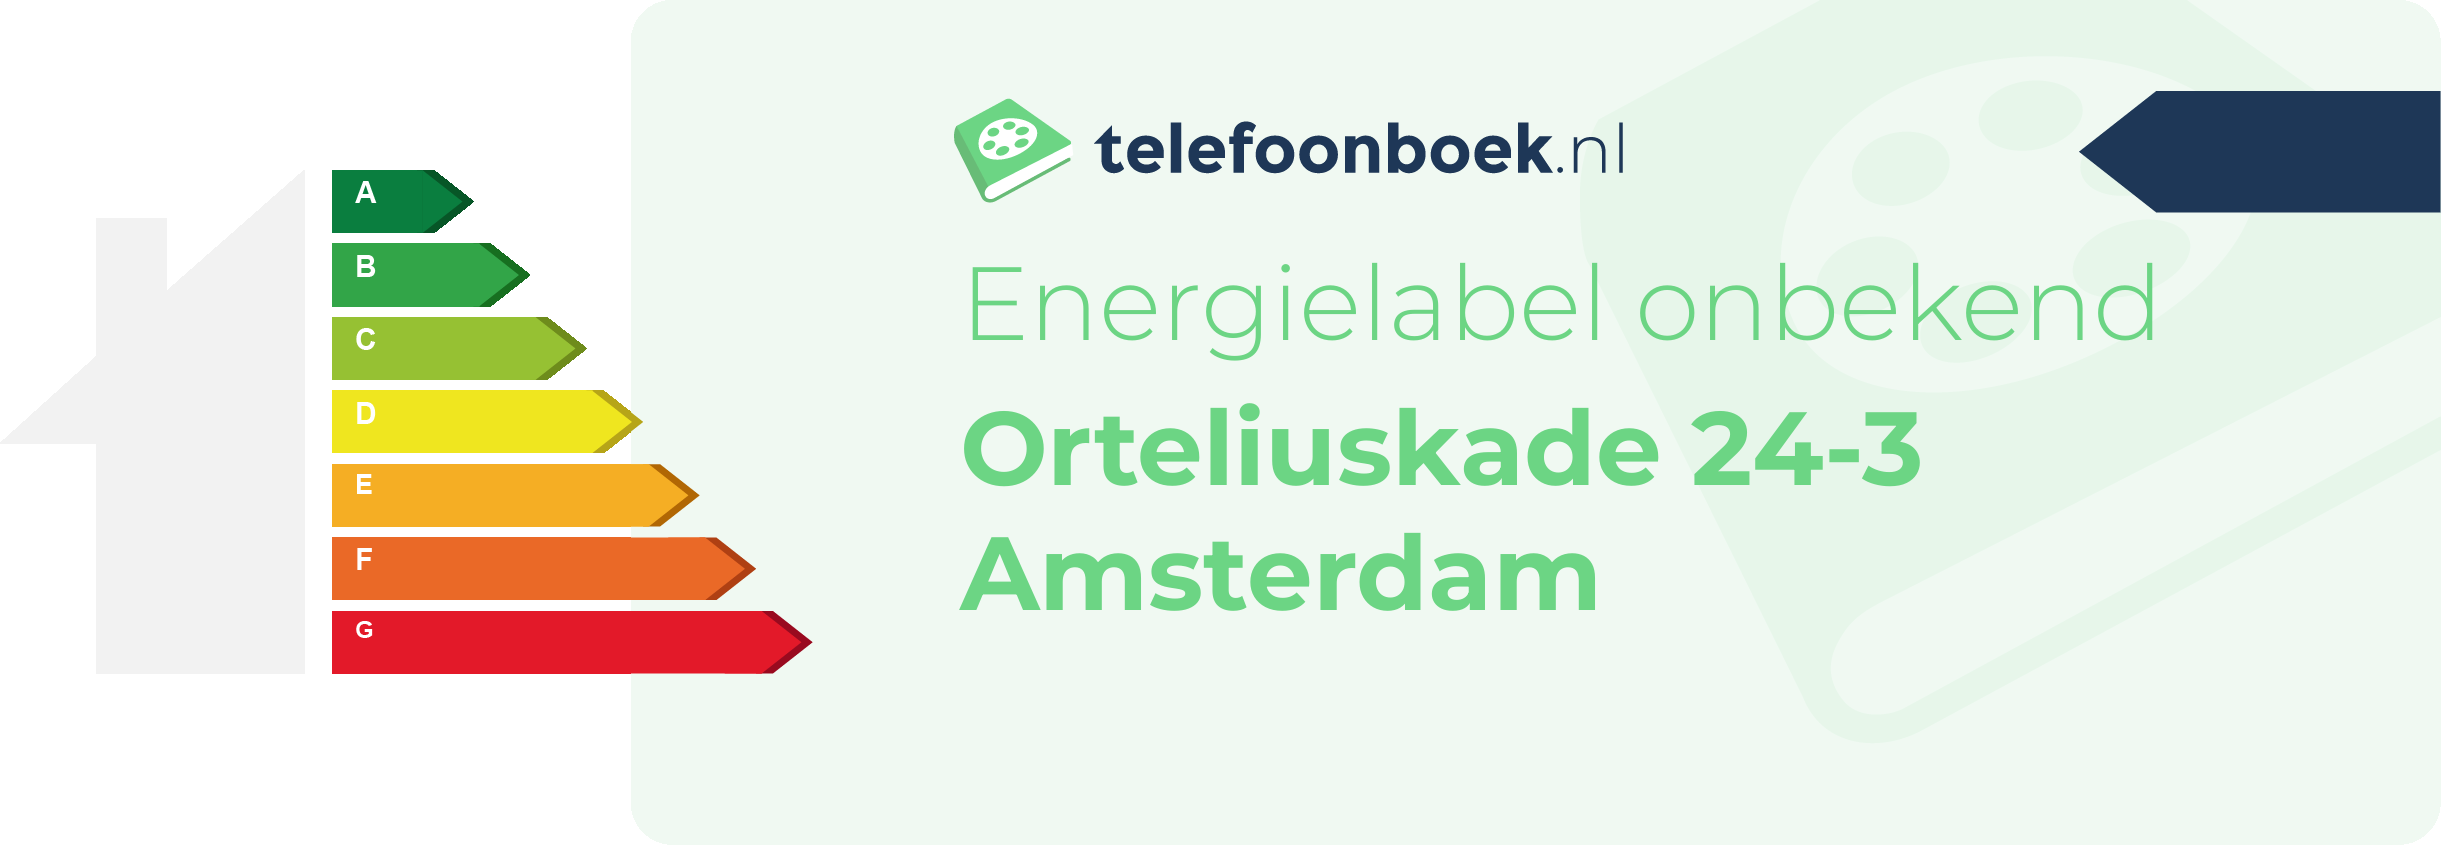 Energielabel Orteliuskade 24-3 Amsterdam